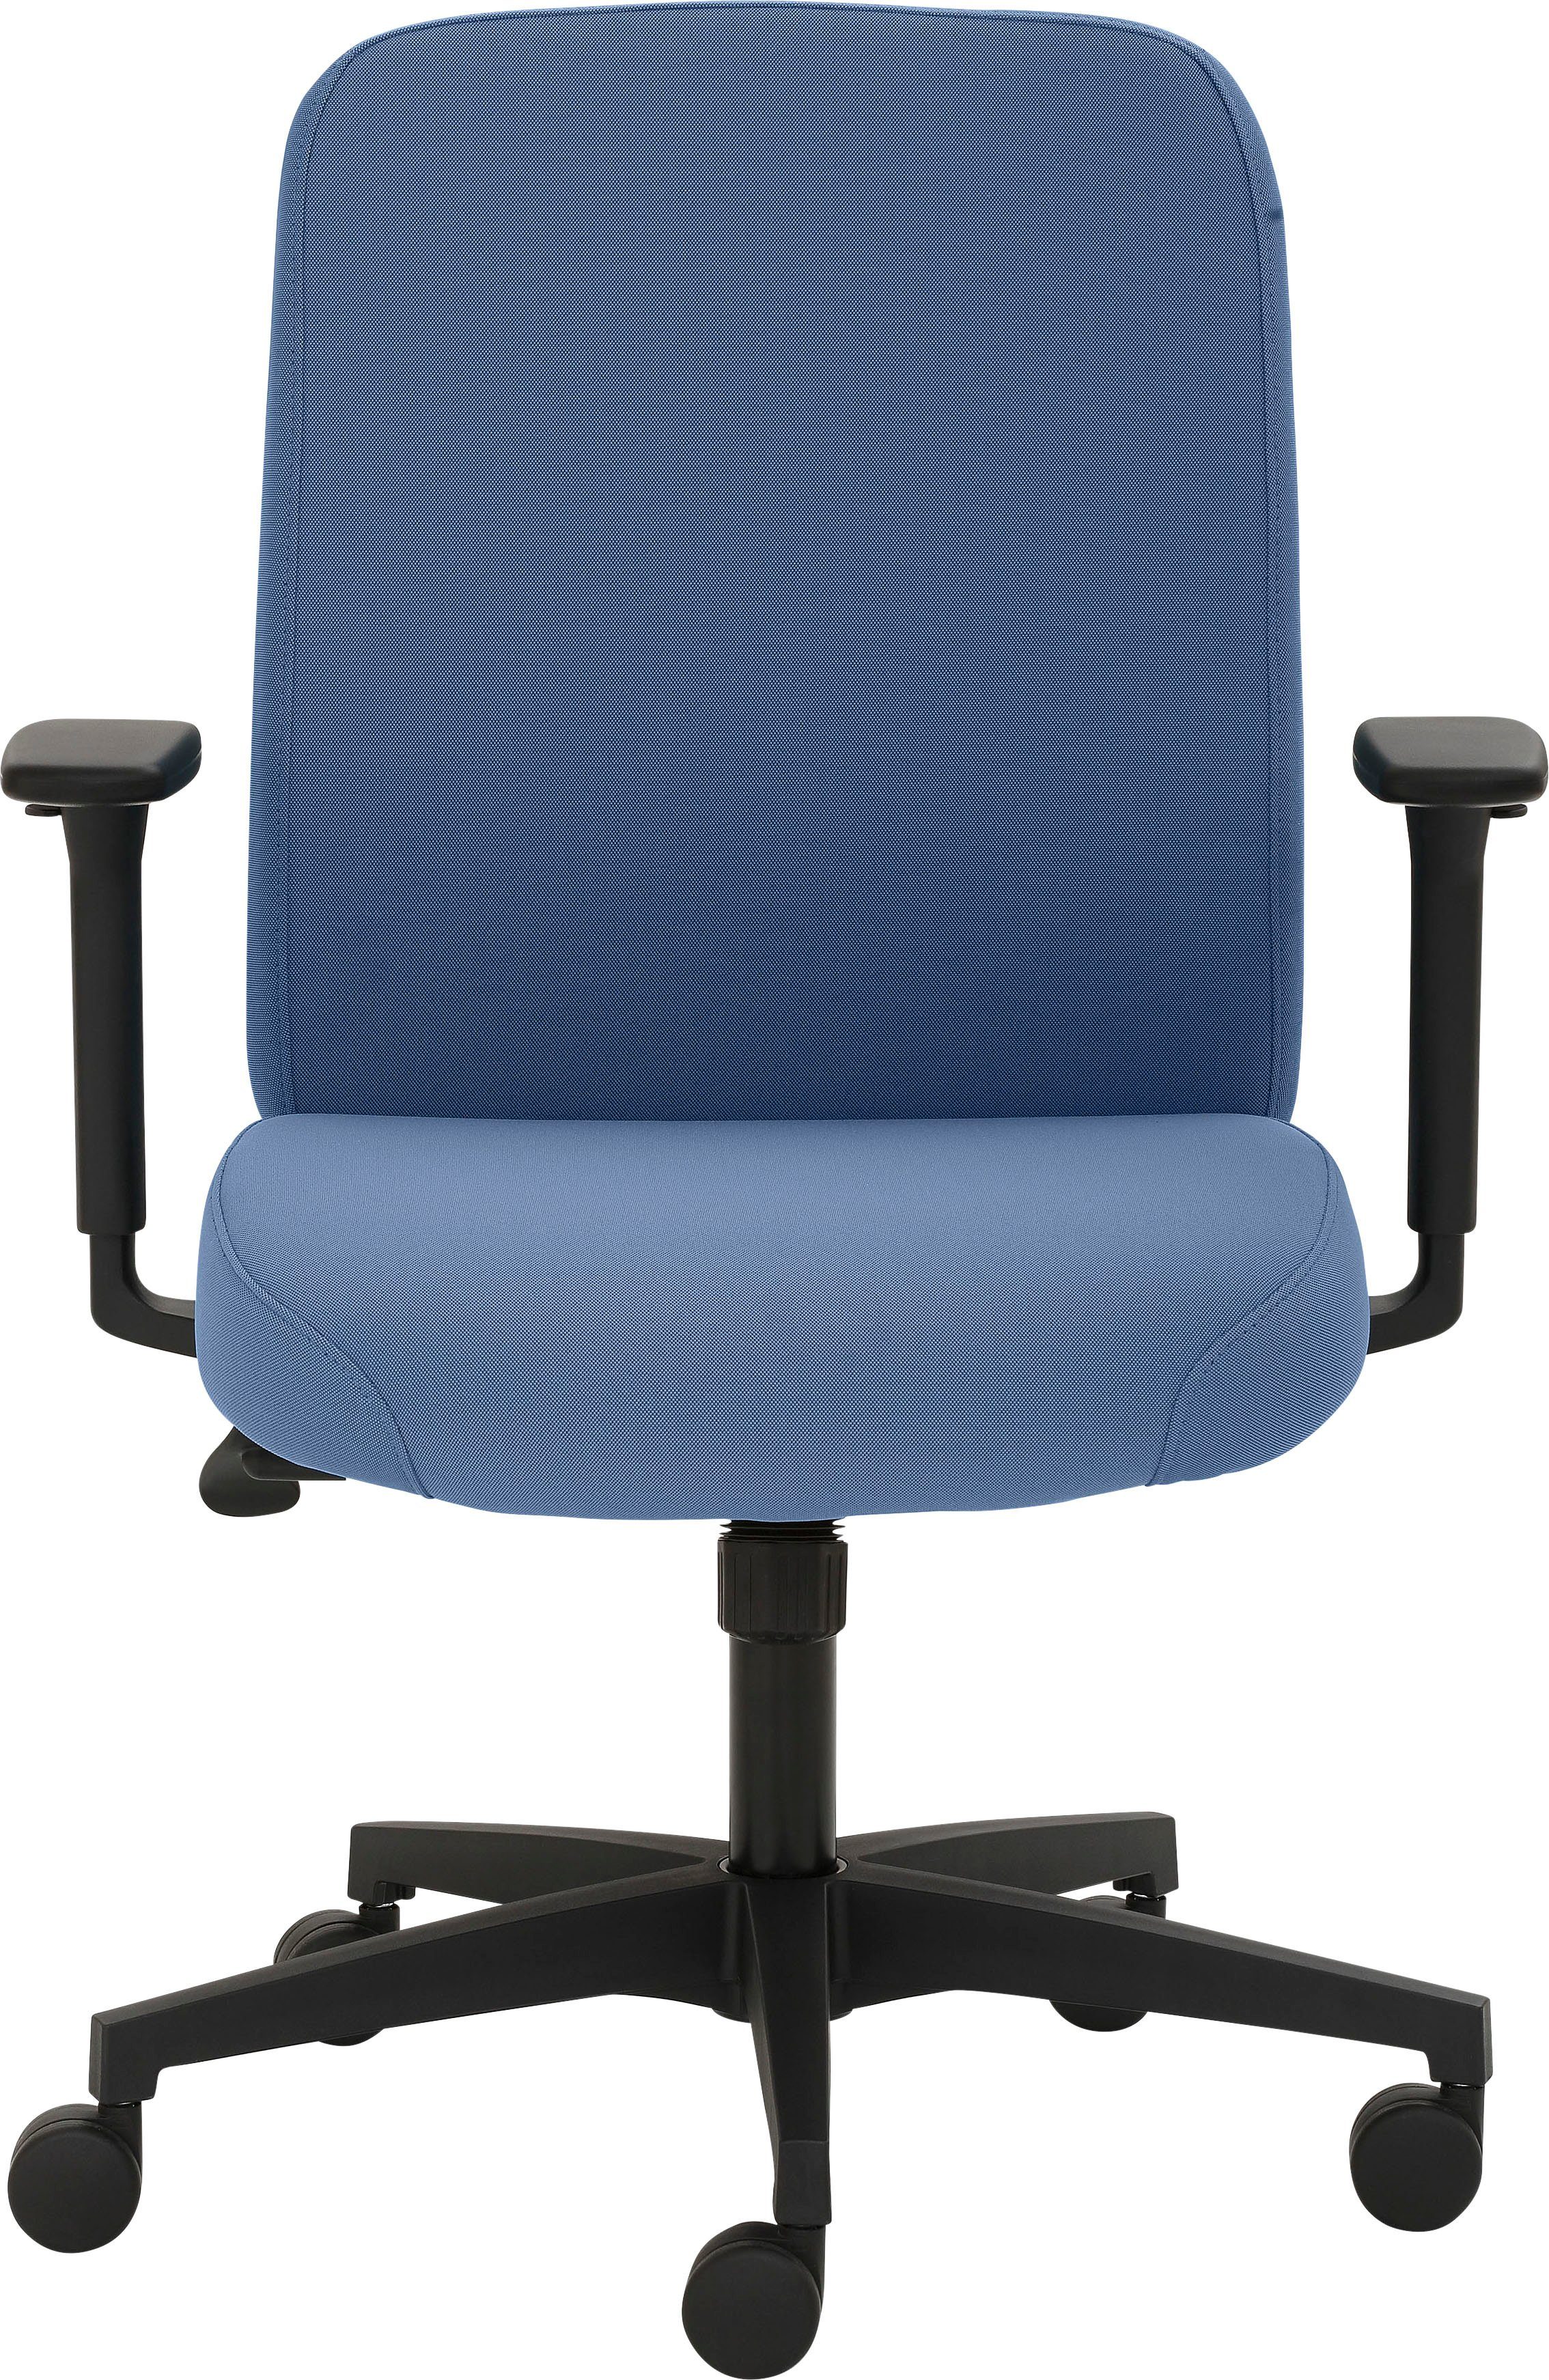 Blau 2219, GS-zertifiziert, für Sitzkomfort Mayer starke | extra maximalen Drehstuhl Polsterung Sitzmöbel Blau